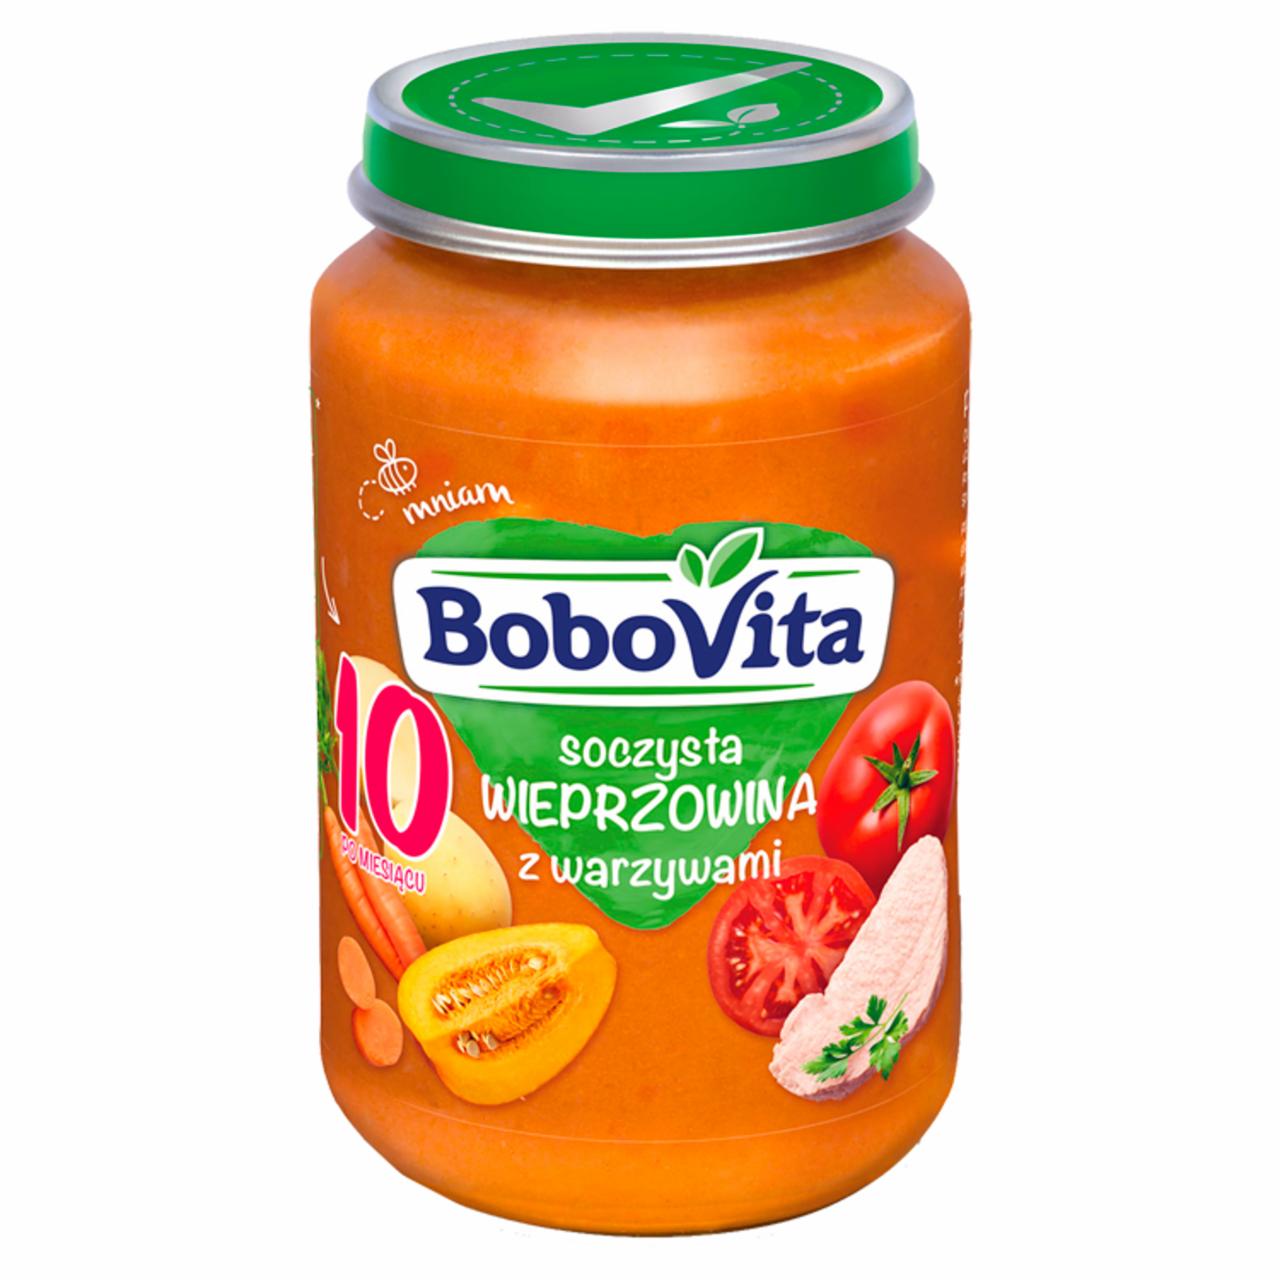 Zdjęcia - BoboVita Soczysta wieprzowina z warzywami po 10 miesiącu 190 g